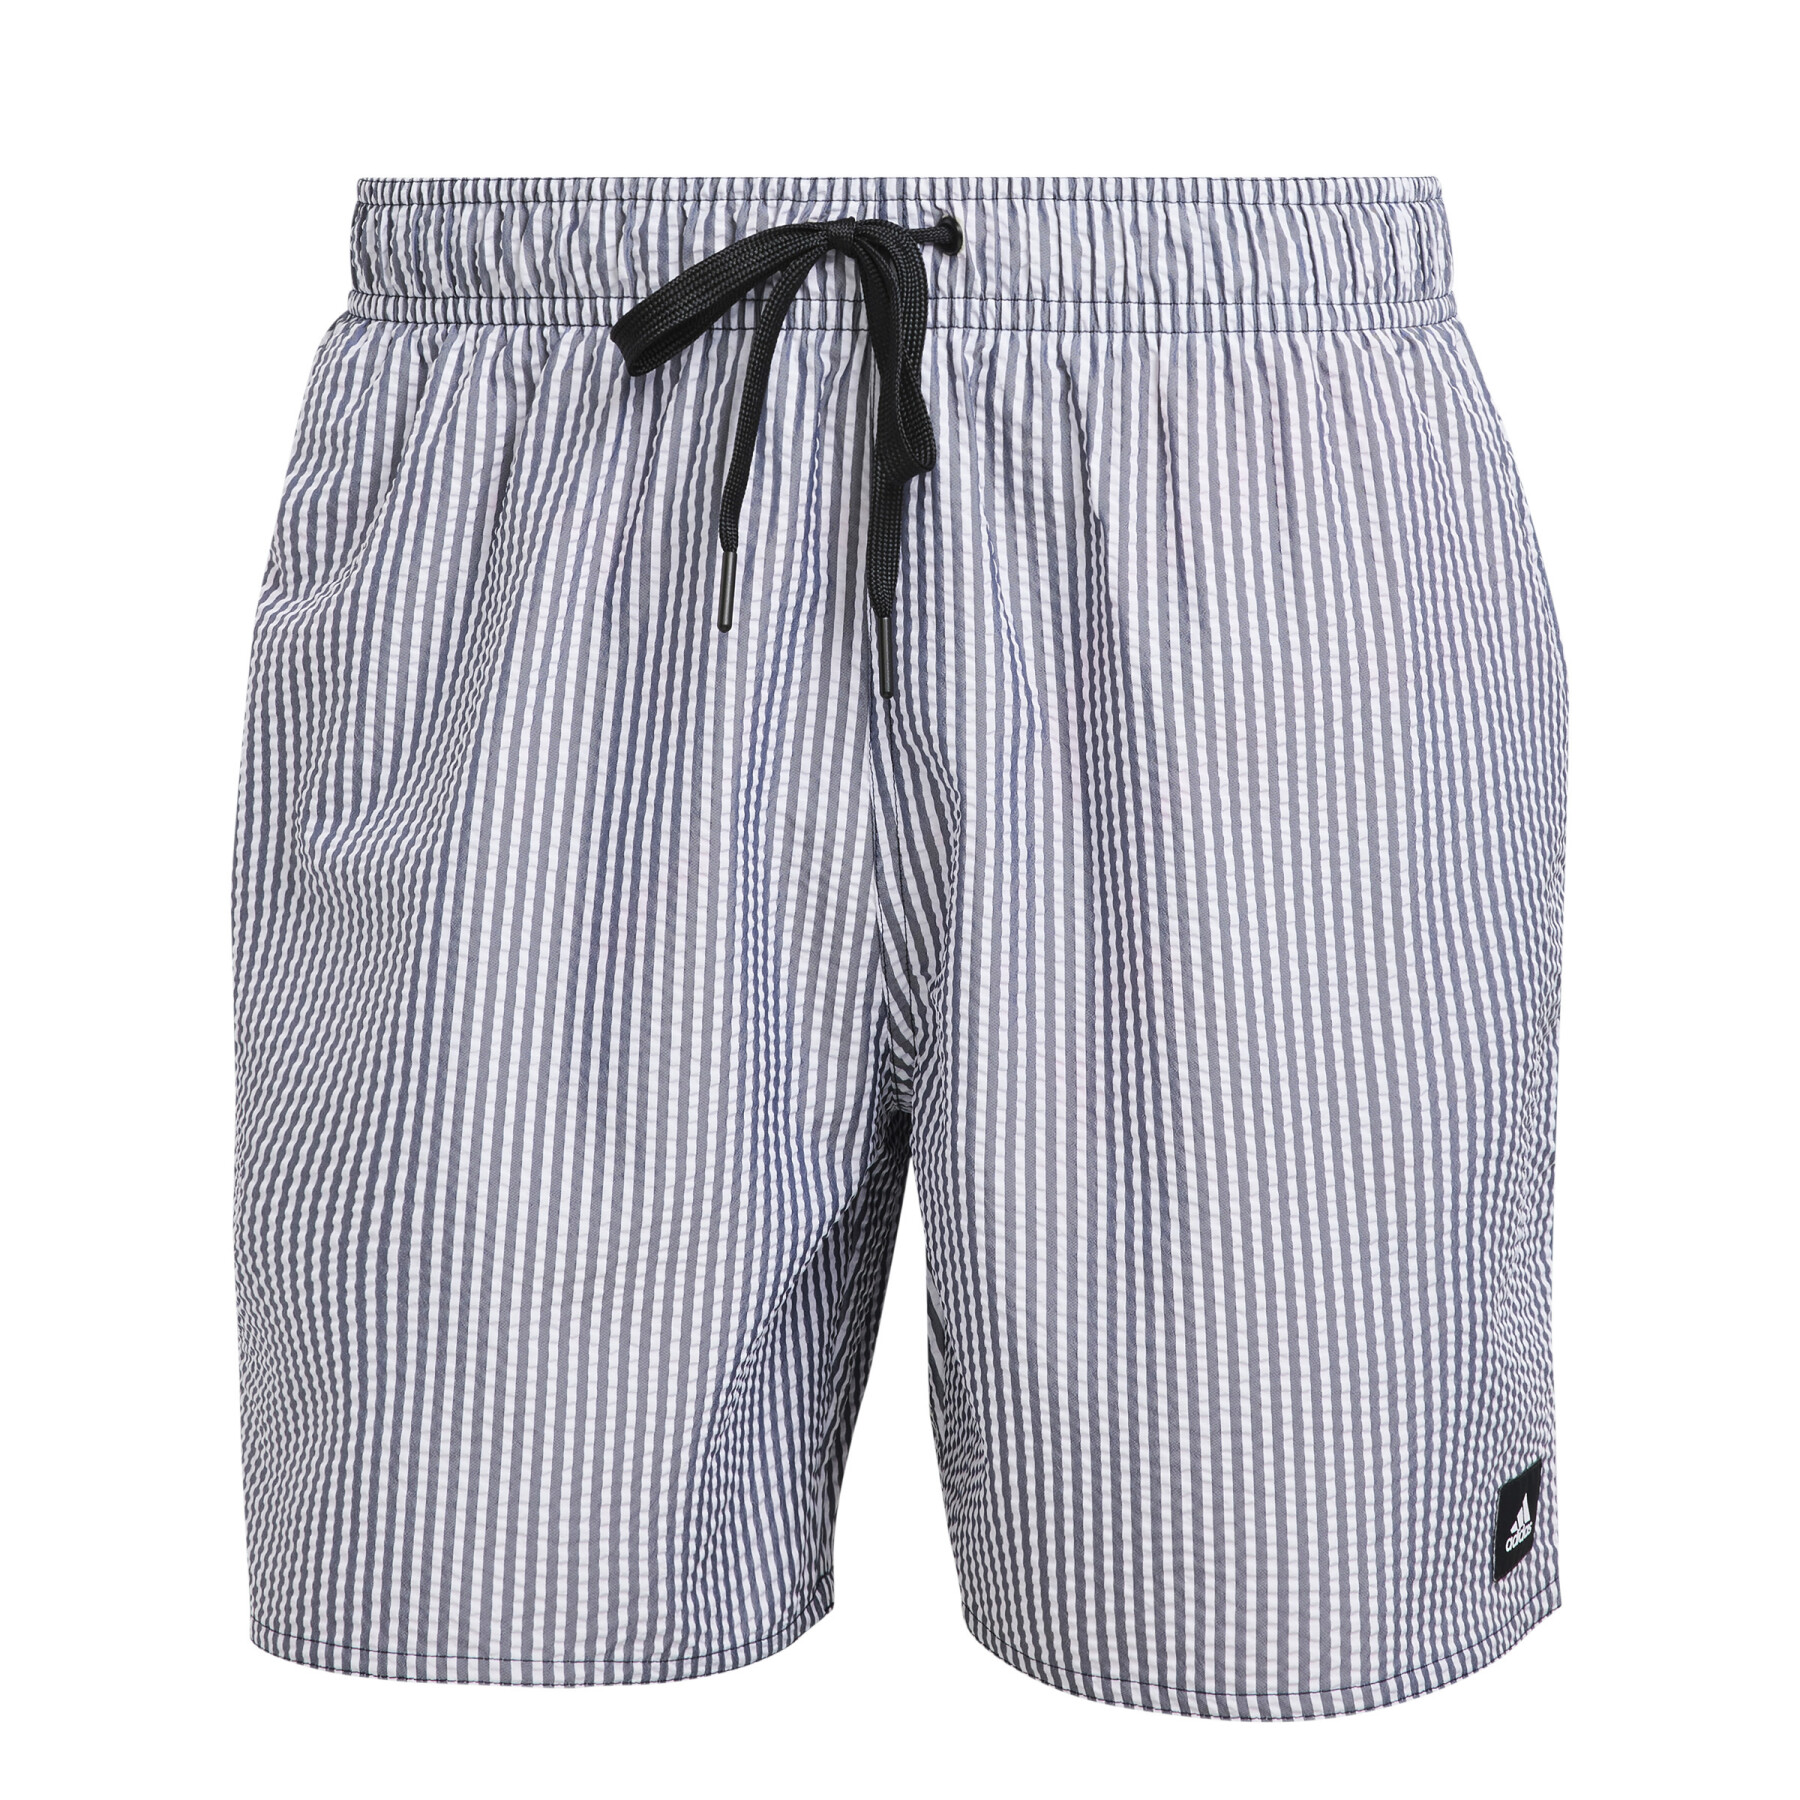 Short cut swim shorts adidas Stripy CLX